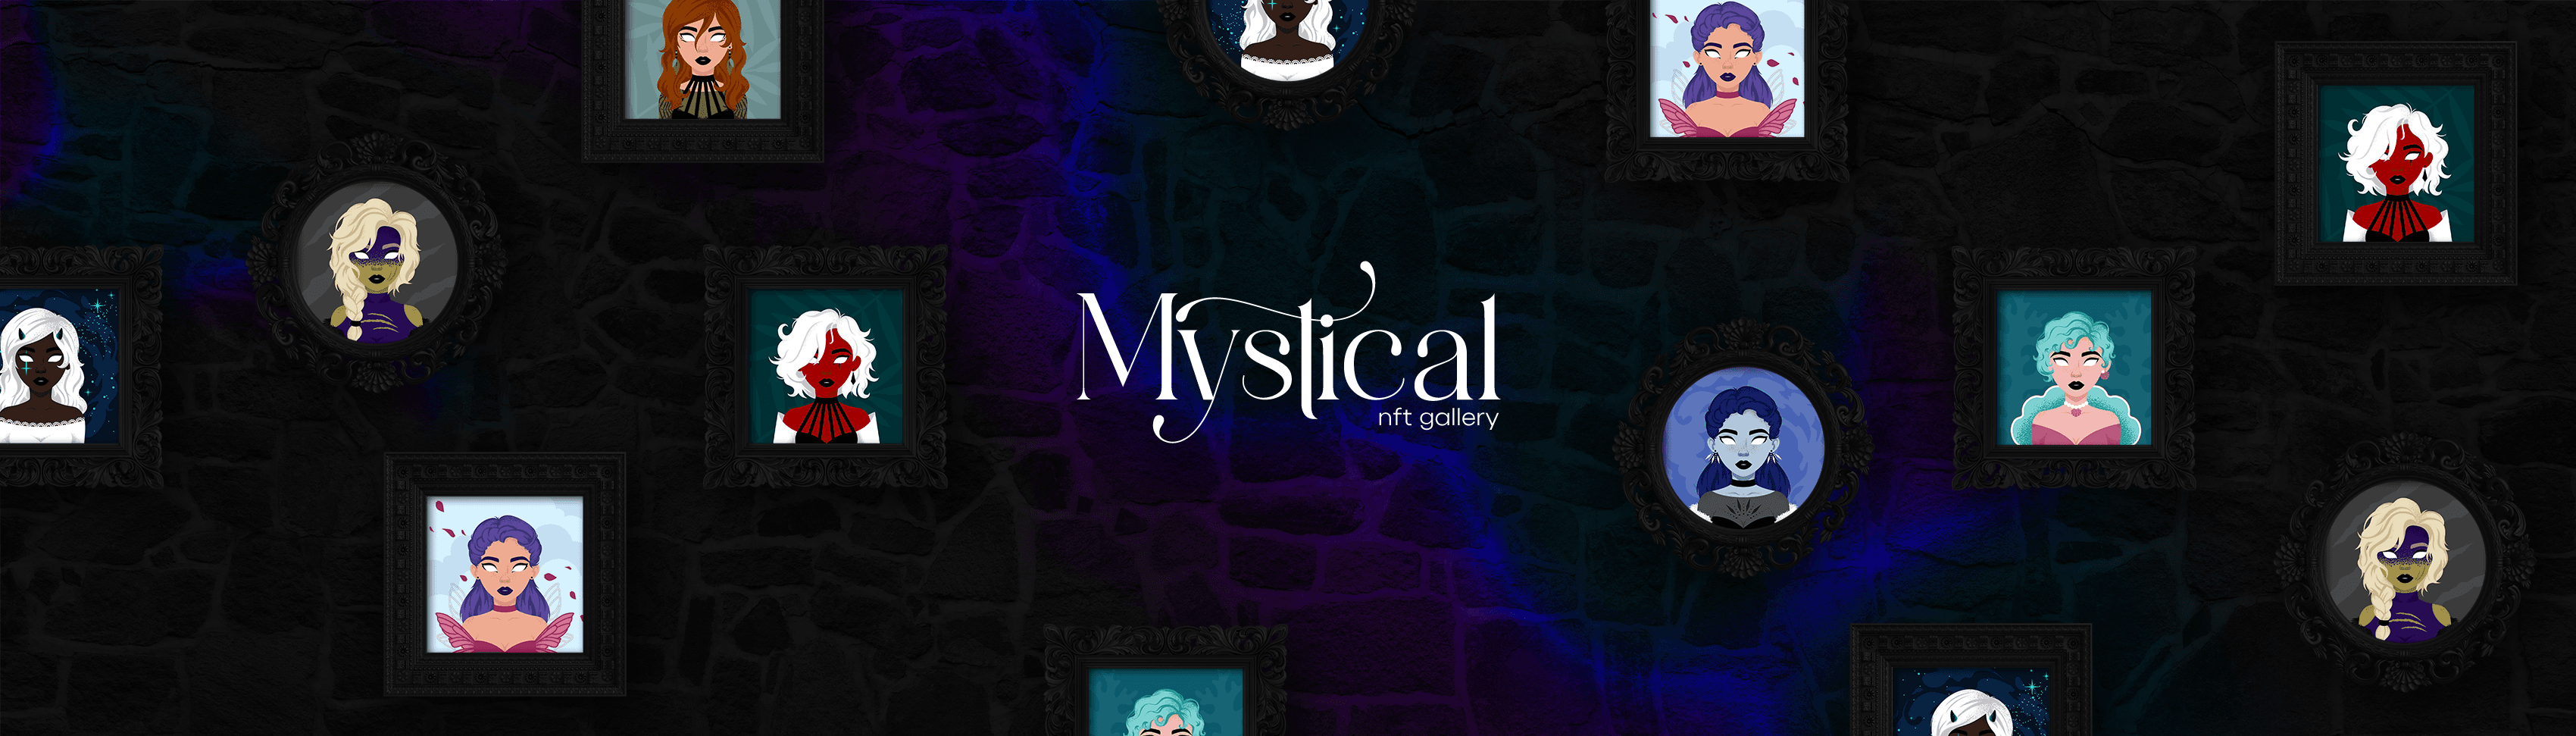 mysticalgallery banner